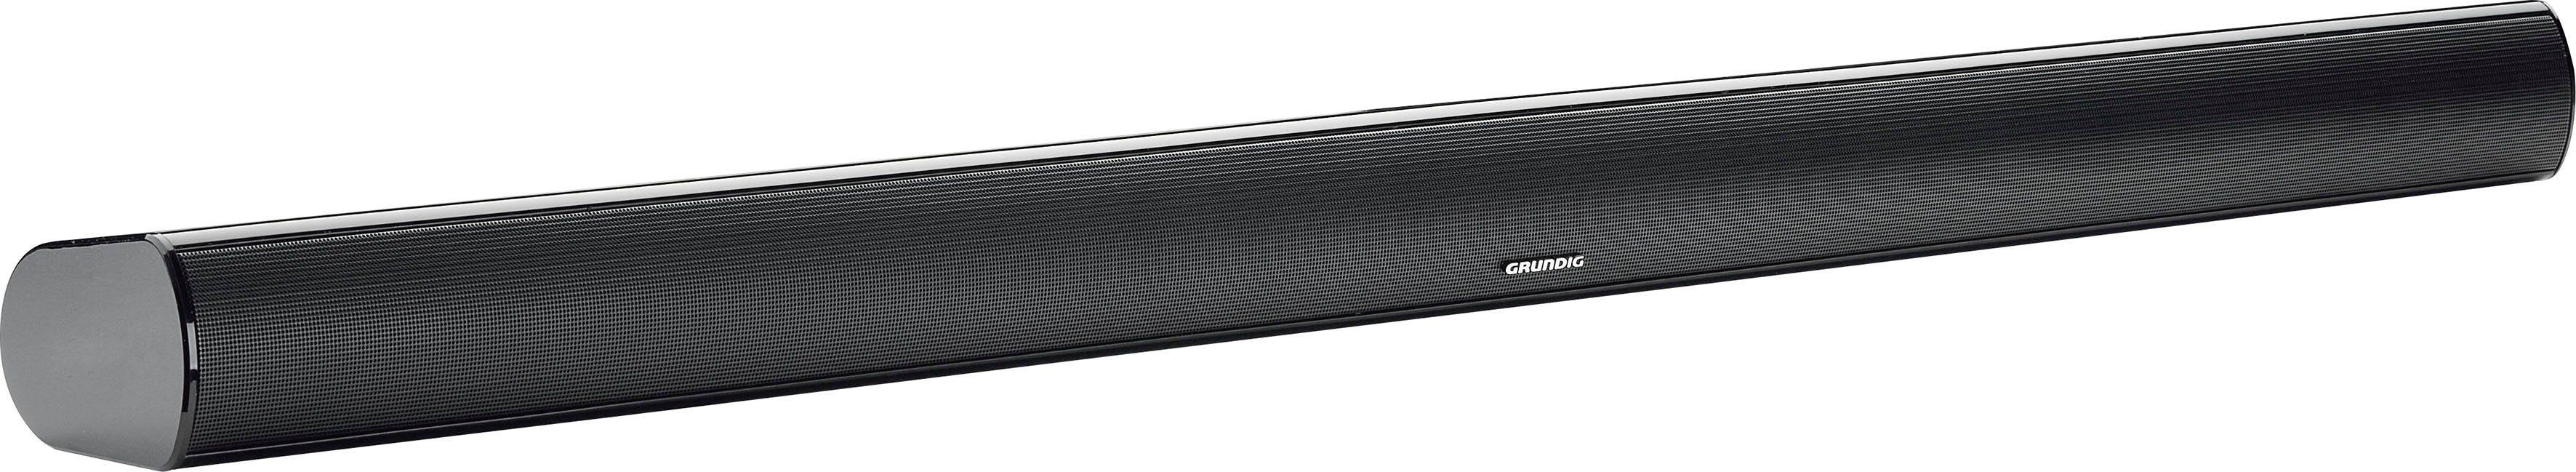 W) Grundig 950 (Bluetooth, schwarz 40 Soundbar DSB 2.0